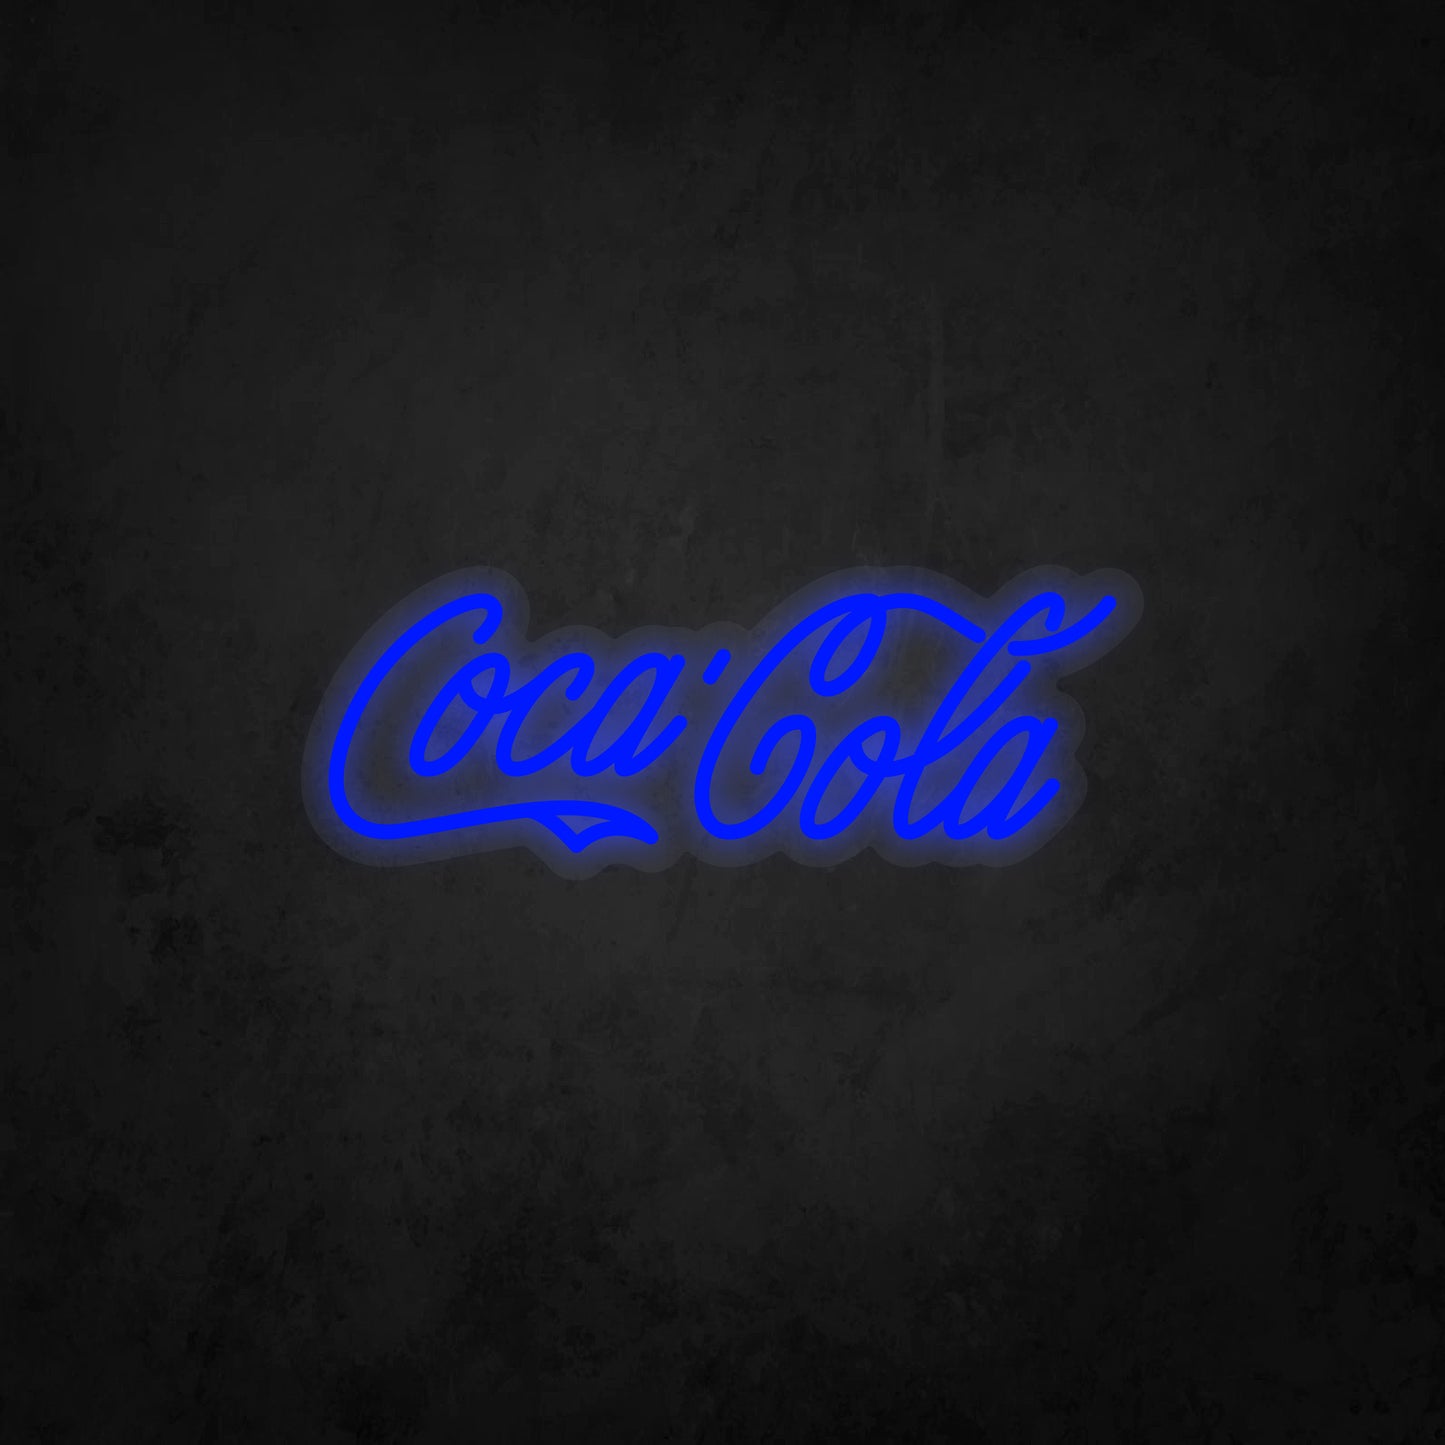 LED Neon Sign - Coca-Cola